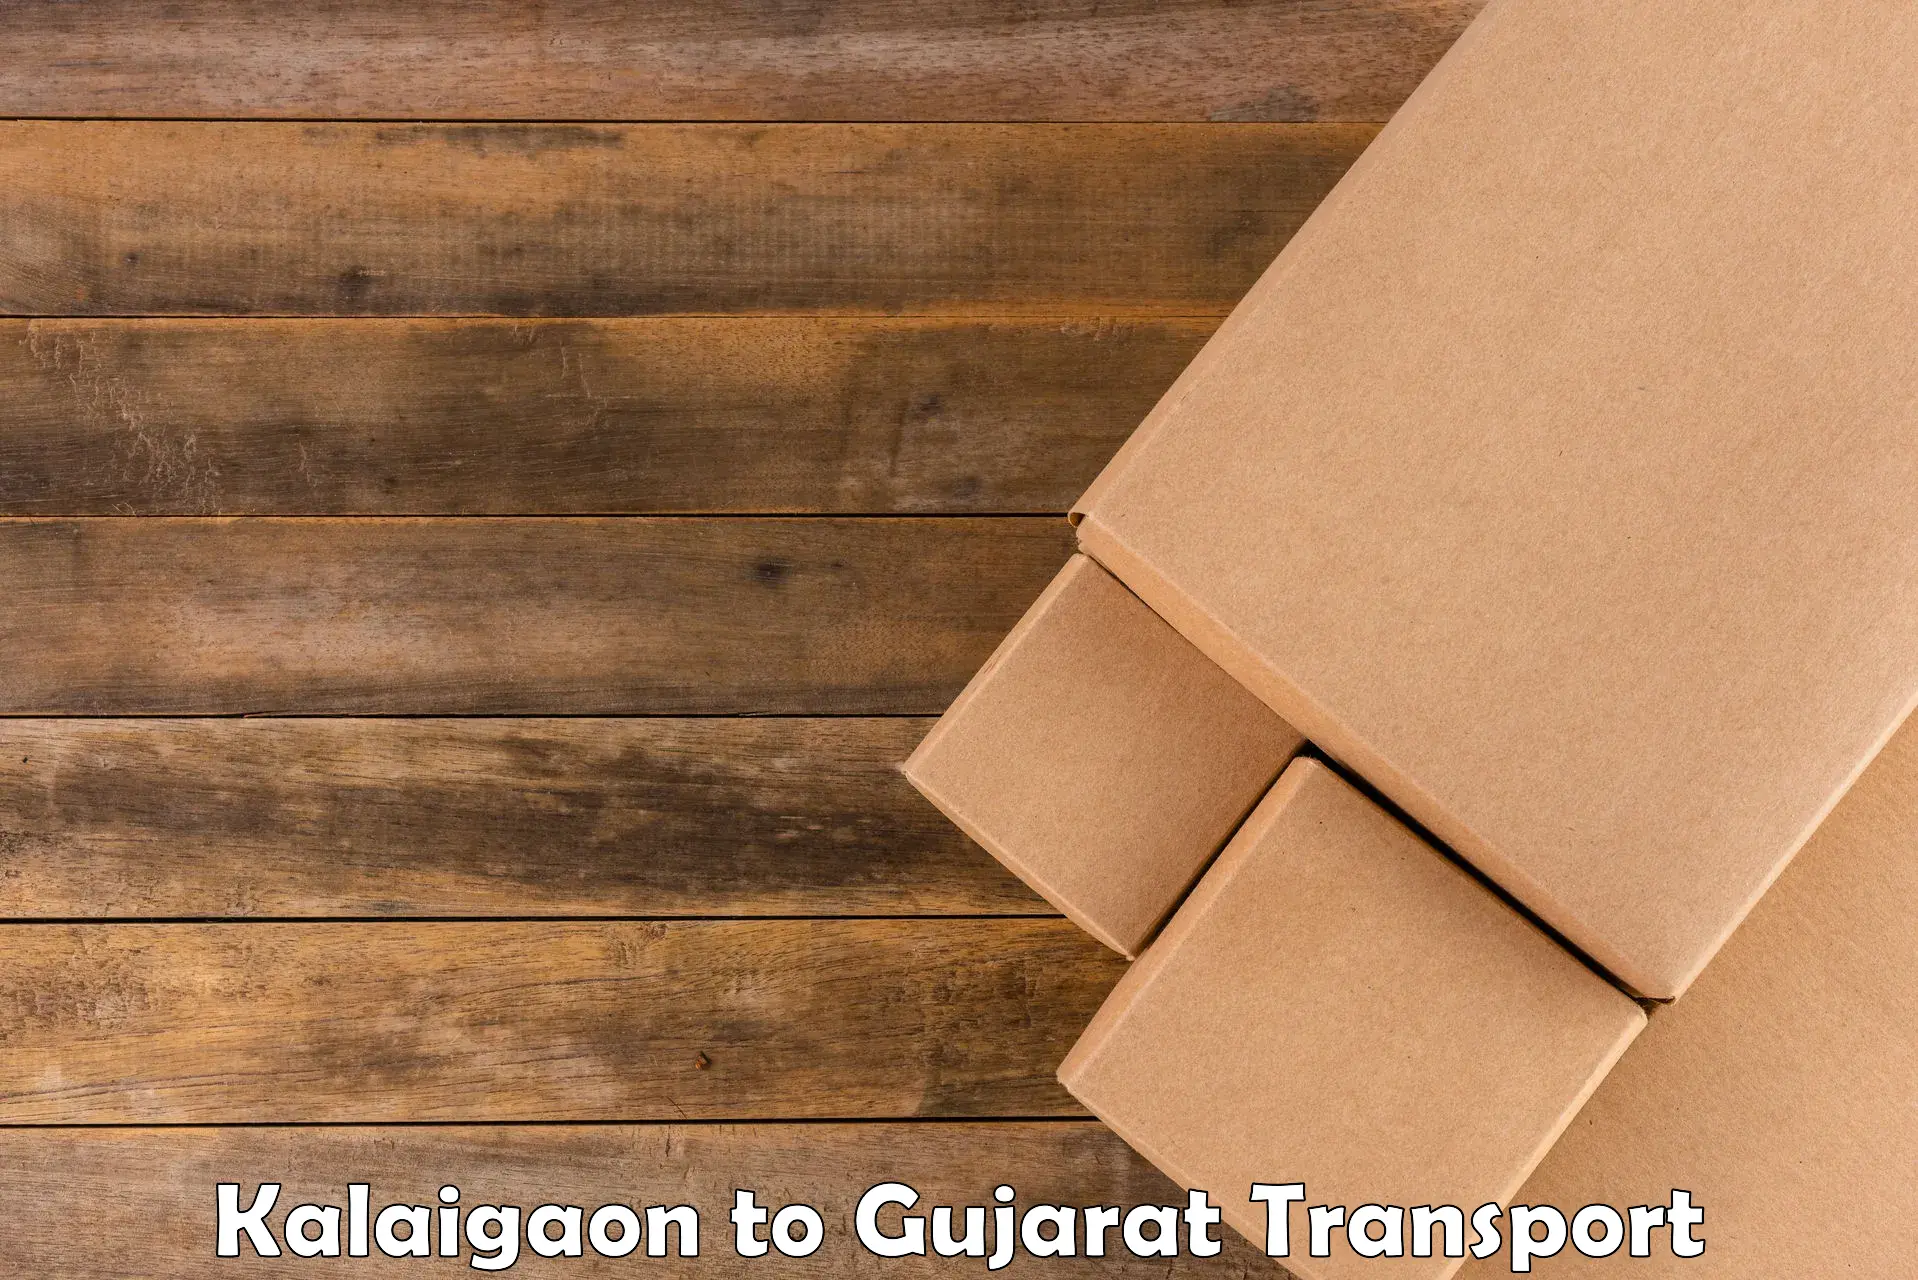 Online transport service Kalaigaon to Kodinar